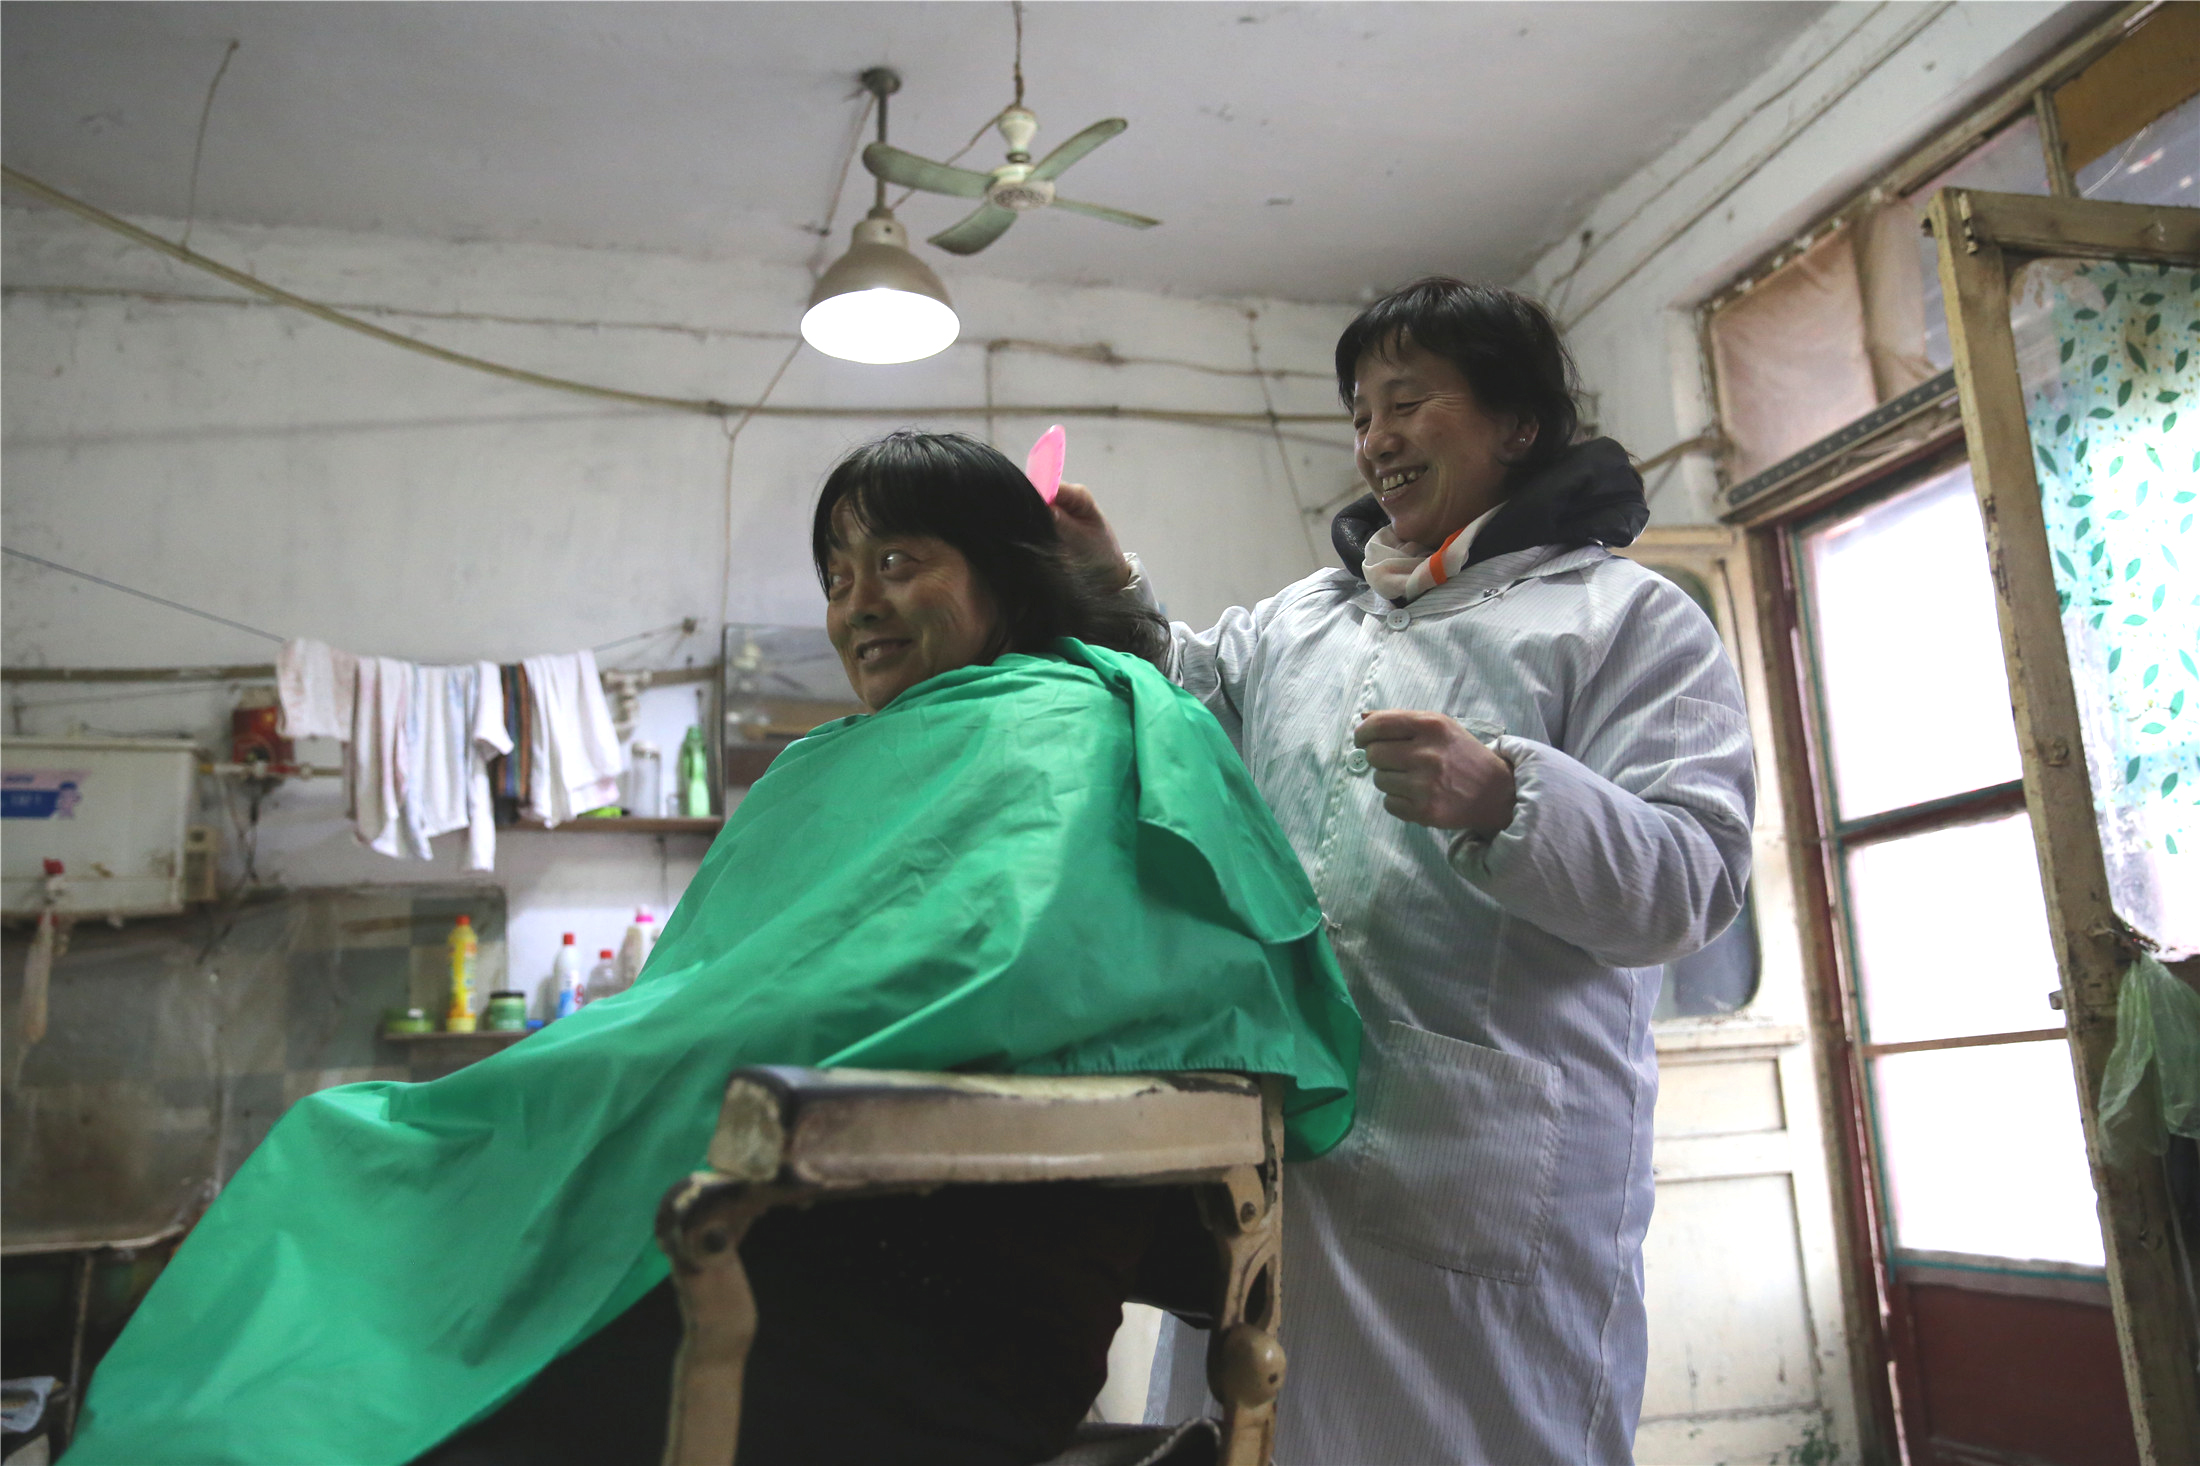 25年的老理发店理发师每天走13里上班